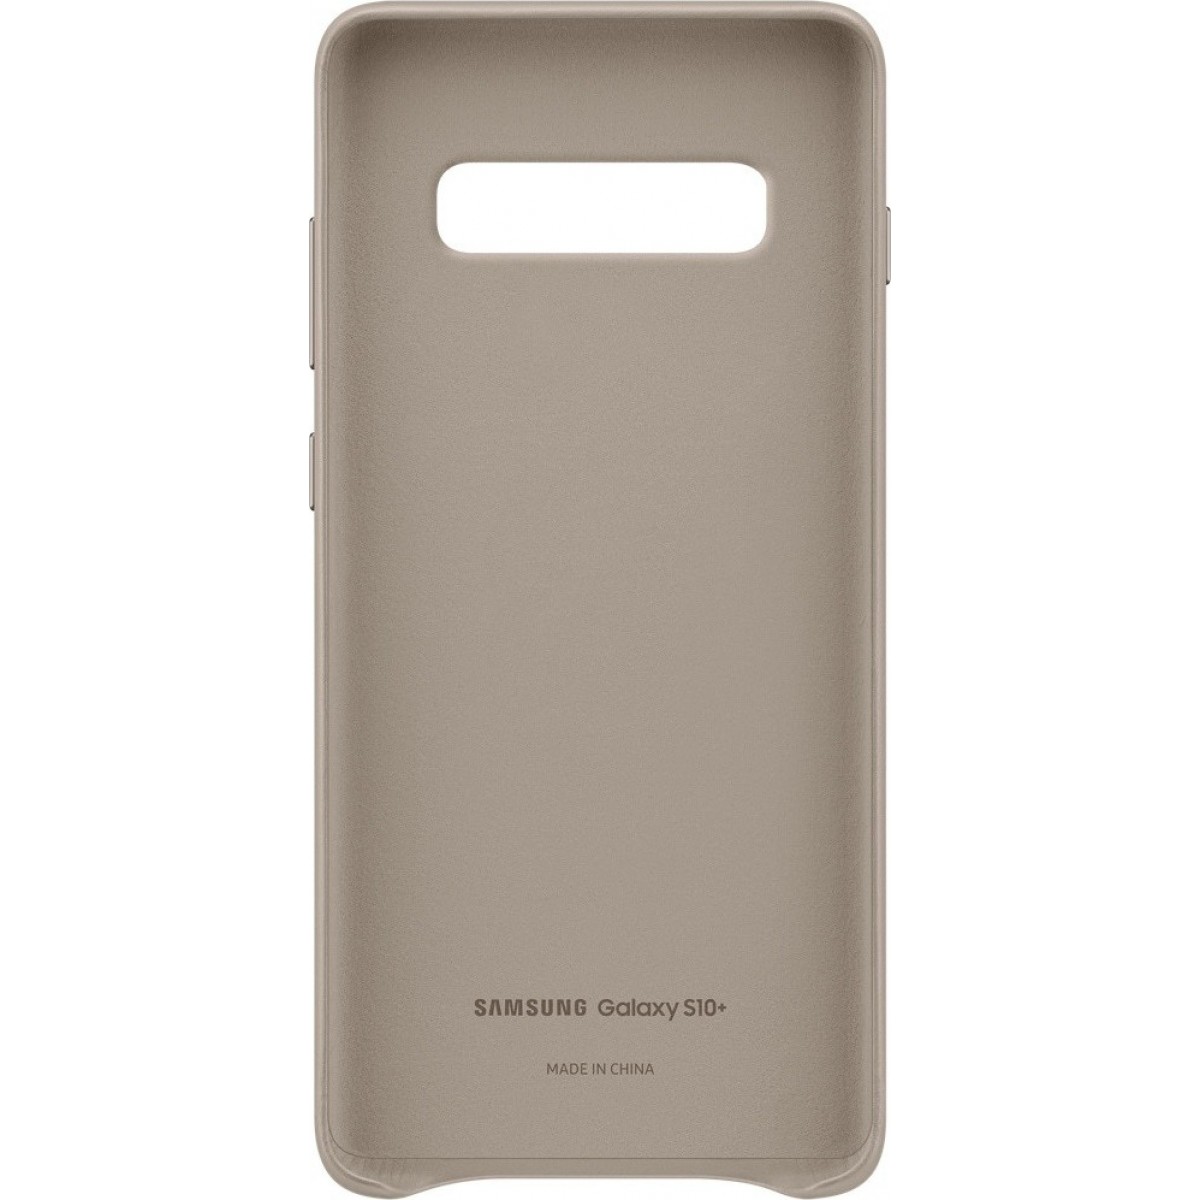 Θηκη για Samsung Galaxy S10 Plus Leather Cover Gray Original EF-VG975LJE